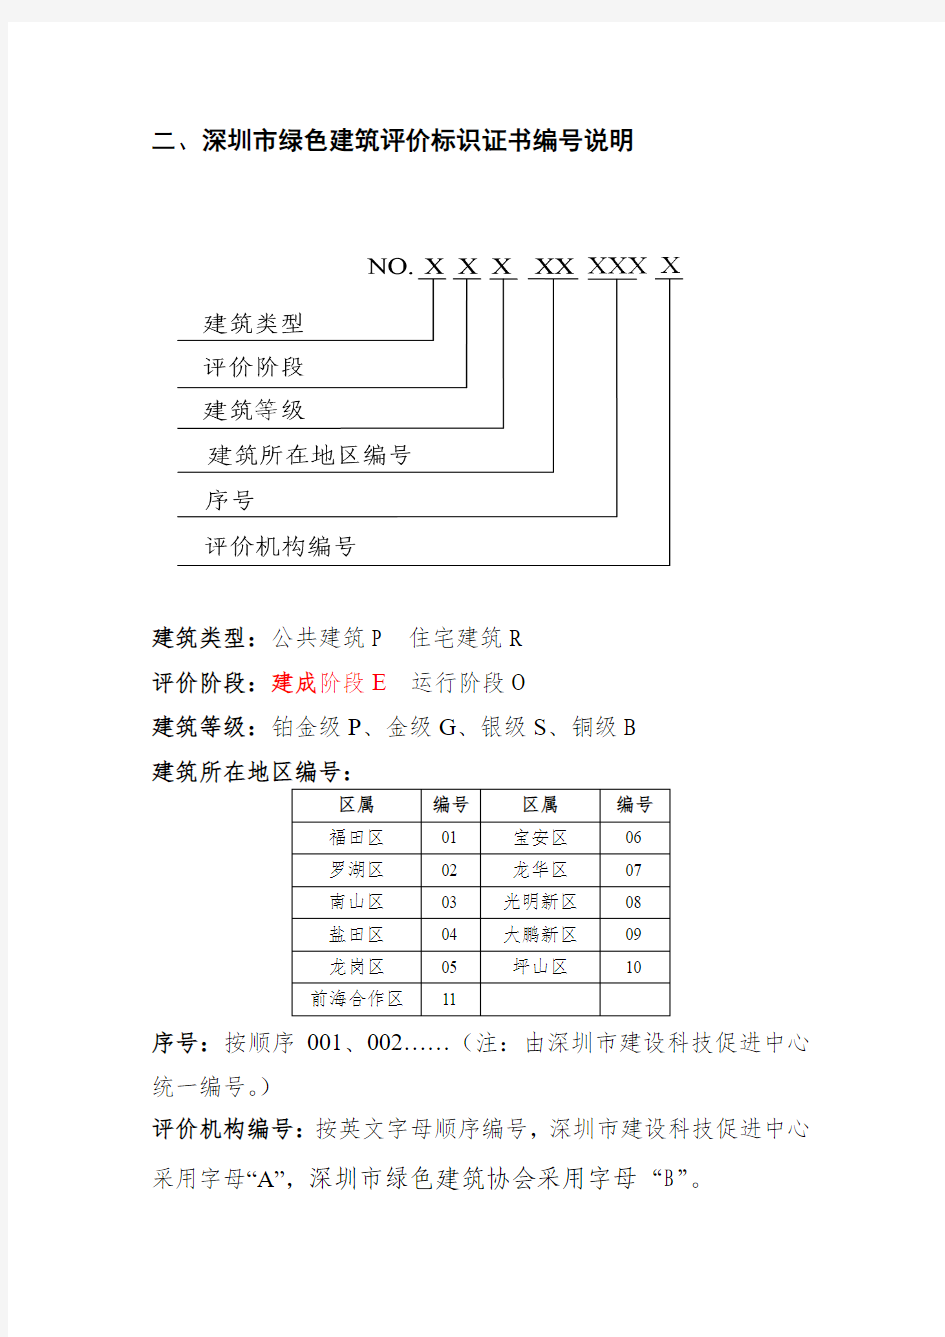 深圳市绿色建筑评价标识证书编号规则